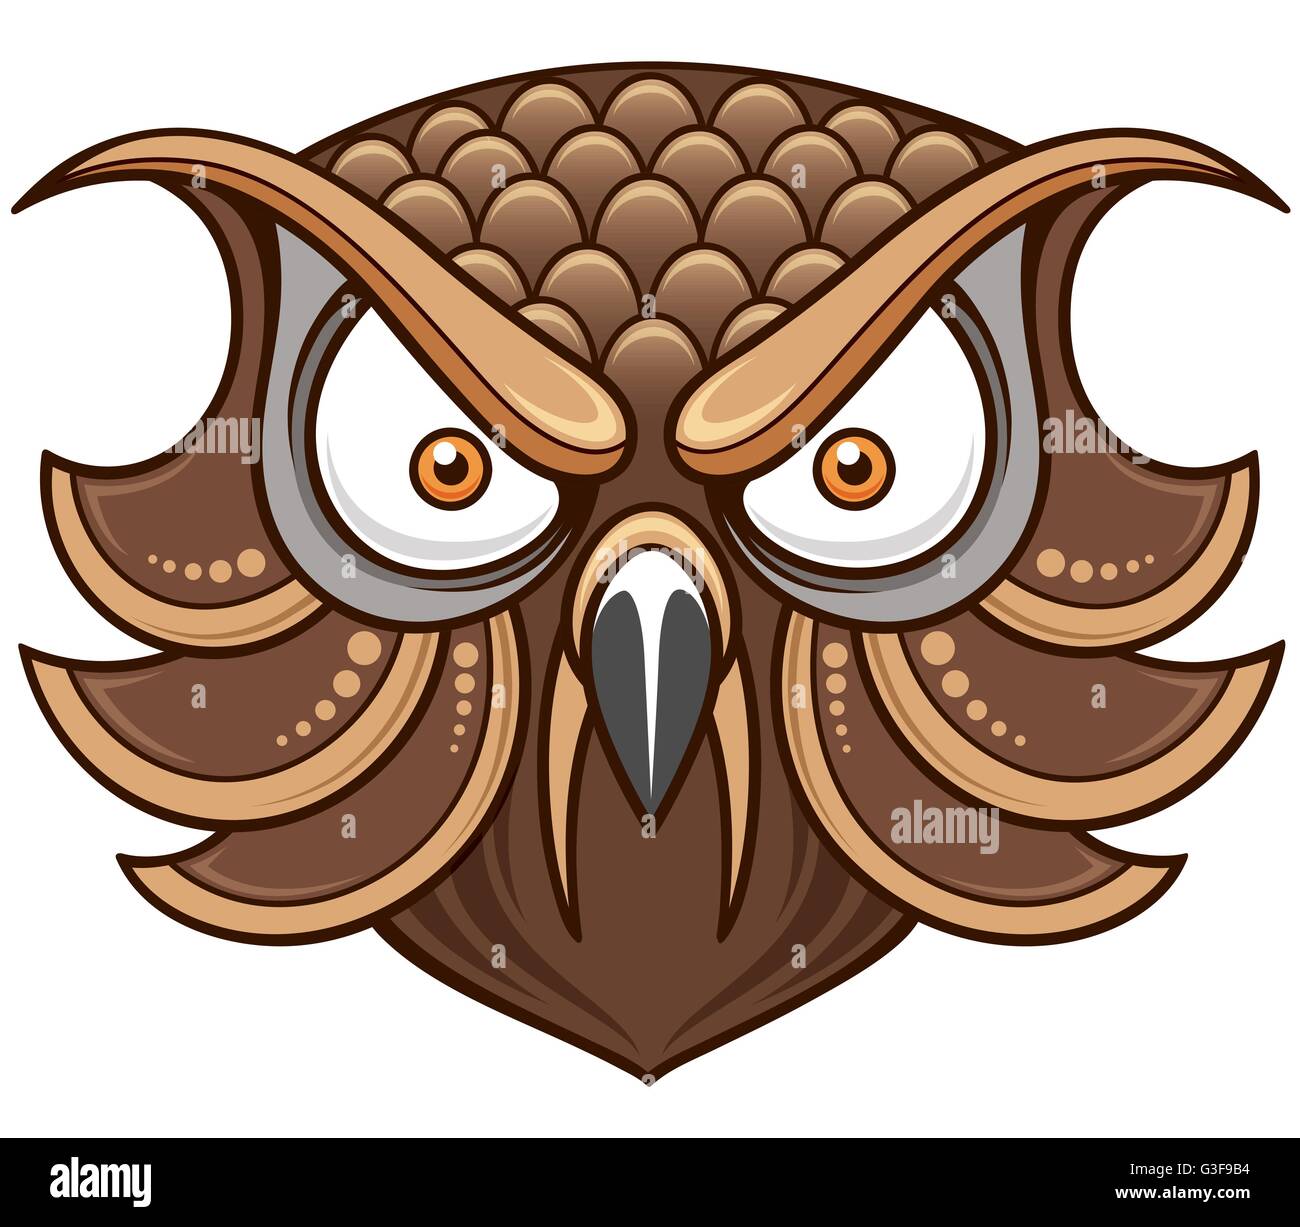 Illustrazione Vettoriale di Cartoon Owl testa Illustrazione Vettoriale